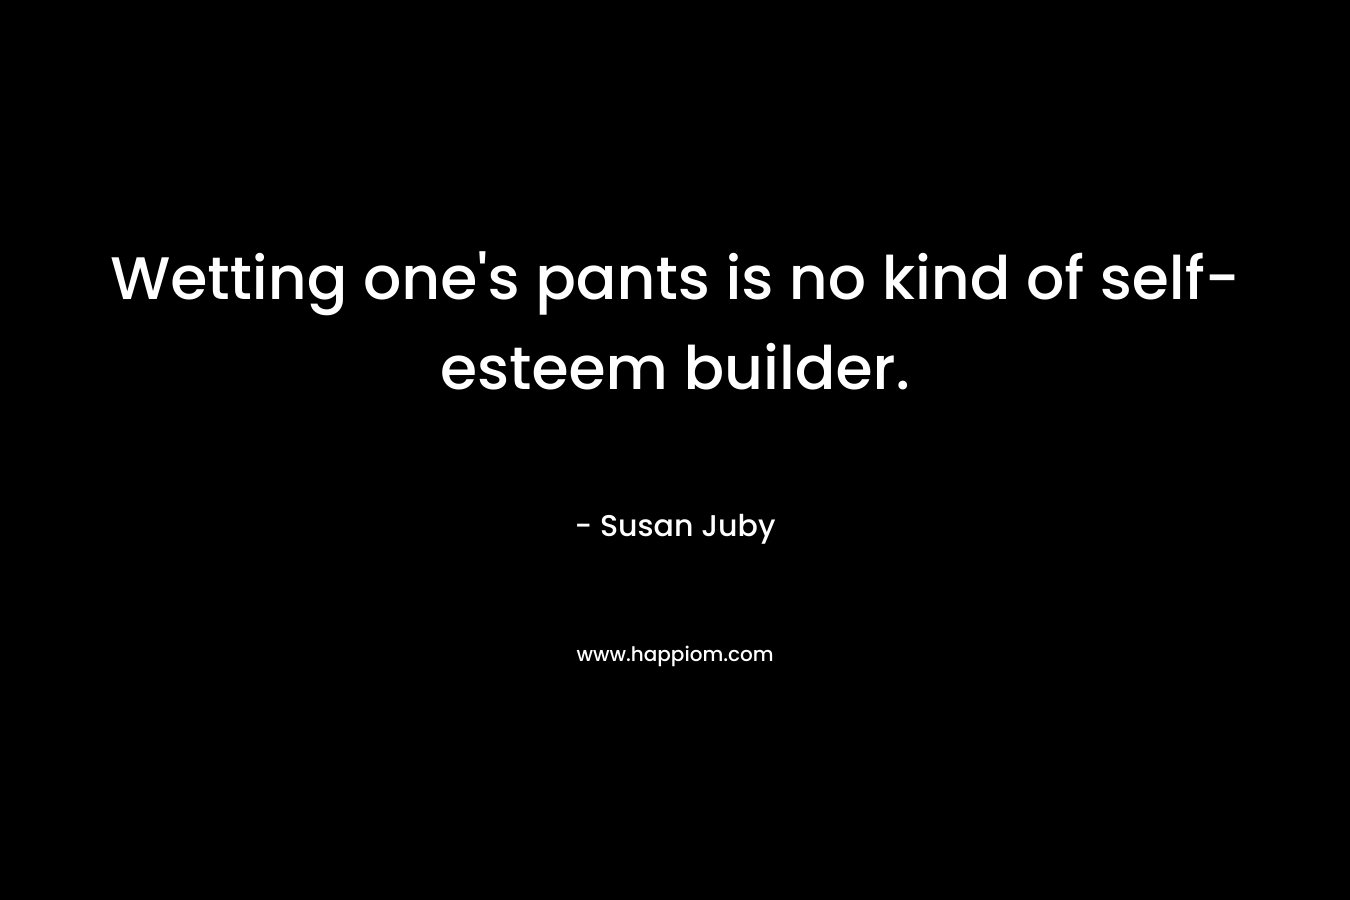 Wetting one’s pants is no kind of self-esteem builder. – Susan Juby